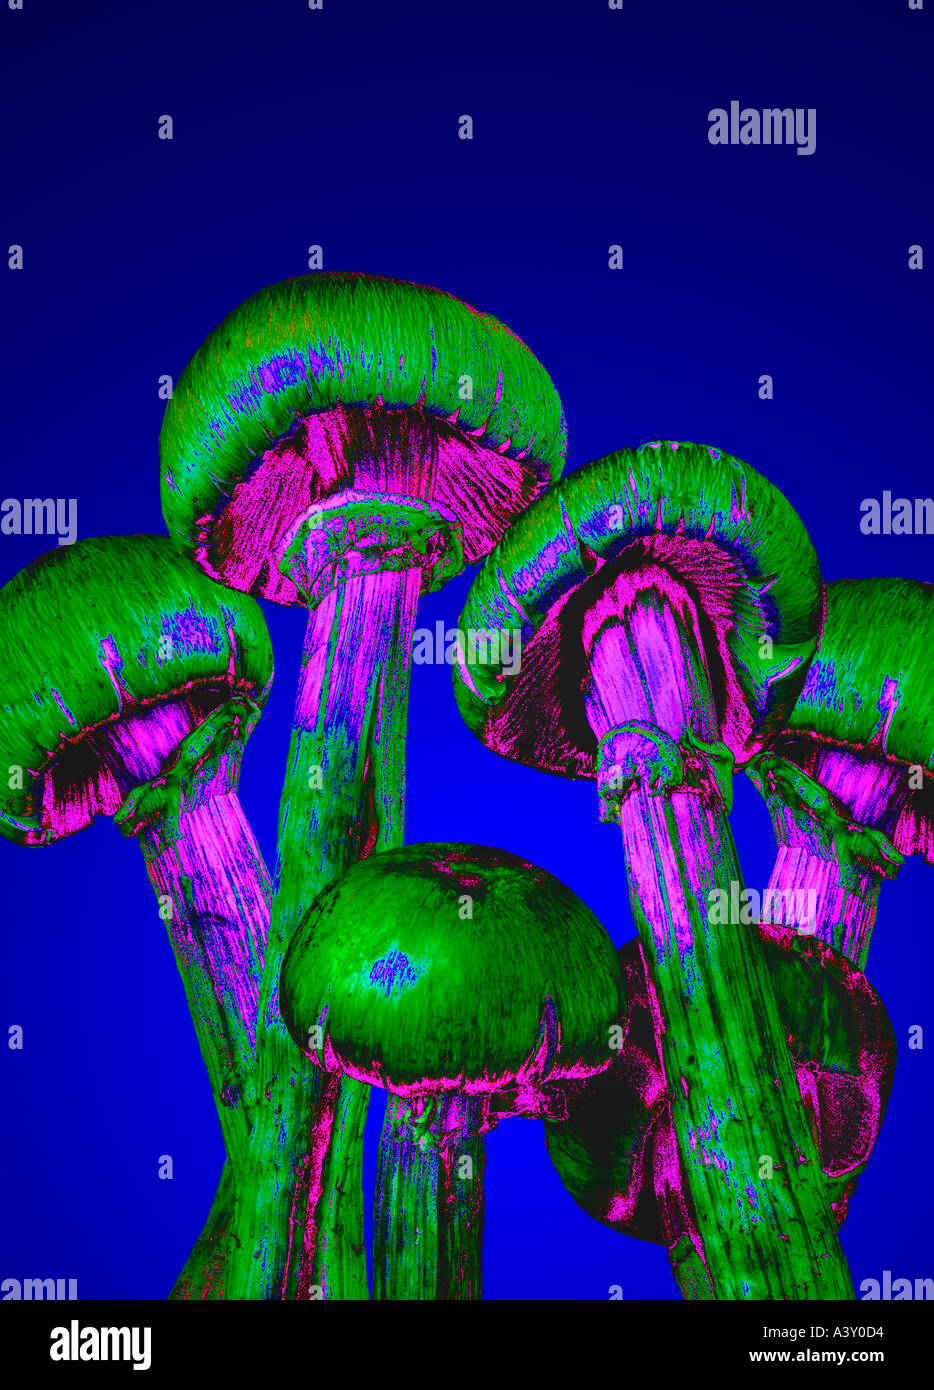 Allucinogeni funghi magici Foto Stock